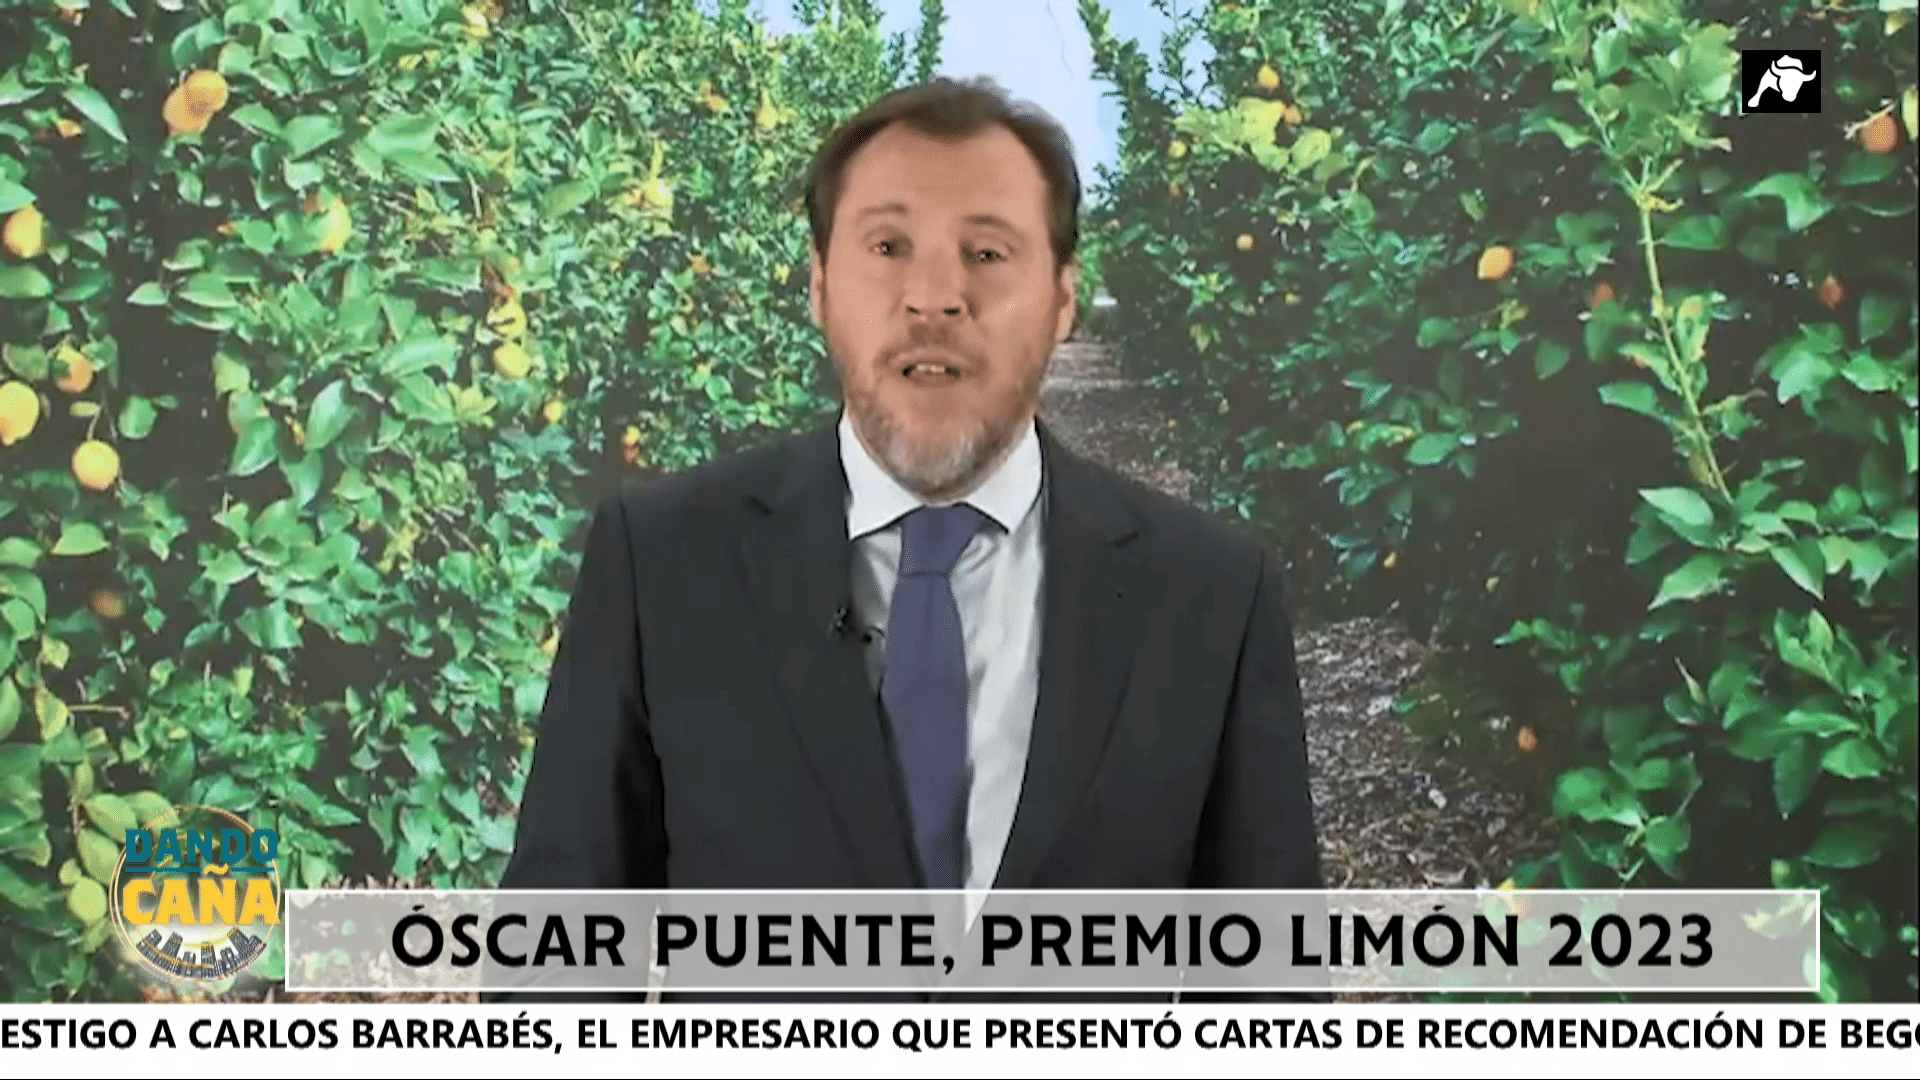 Óscar Puente hace el ridículo en un discurso contra la prensa y Ayuso con el Premio Limón